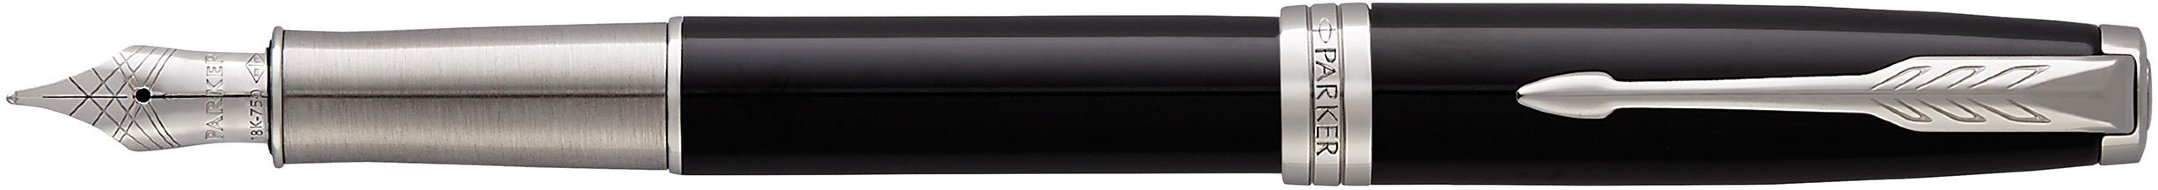 Перьевая ручка Parker Sonnet Core F530, Laque Black СT